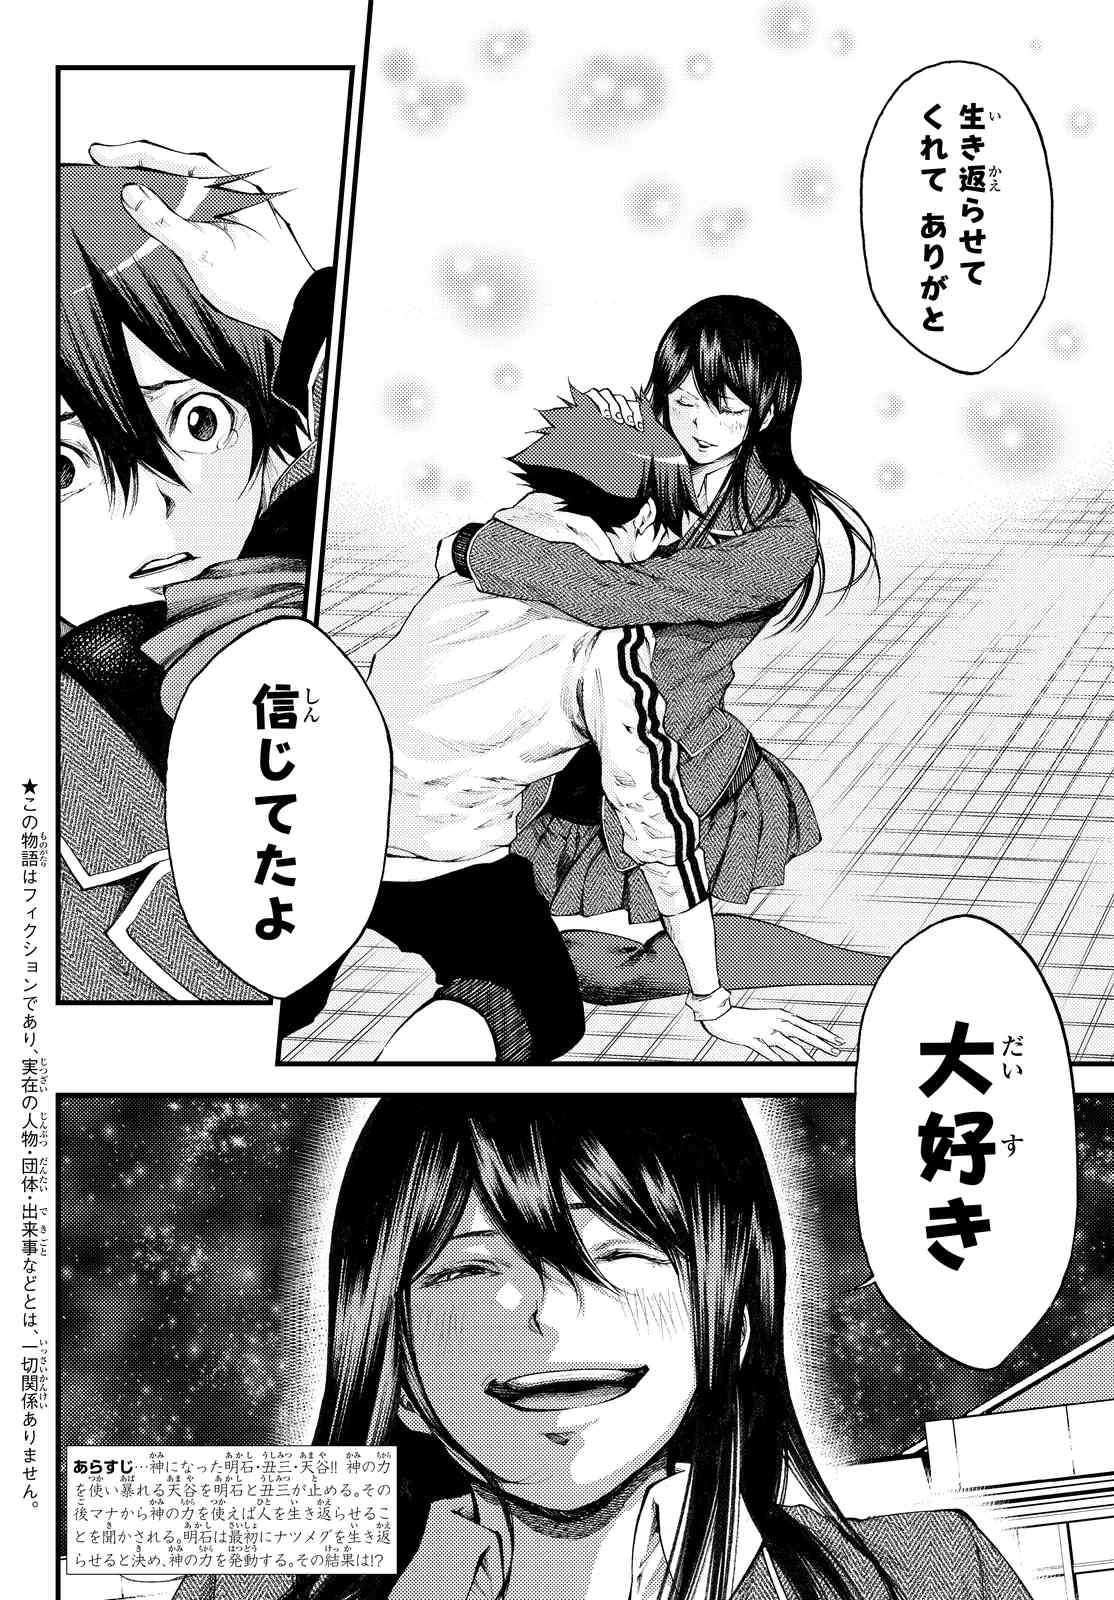 Kamisama no Ituori - Chapter 180 - Page 2